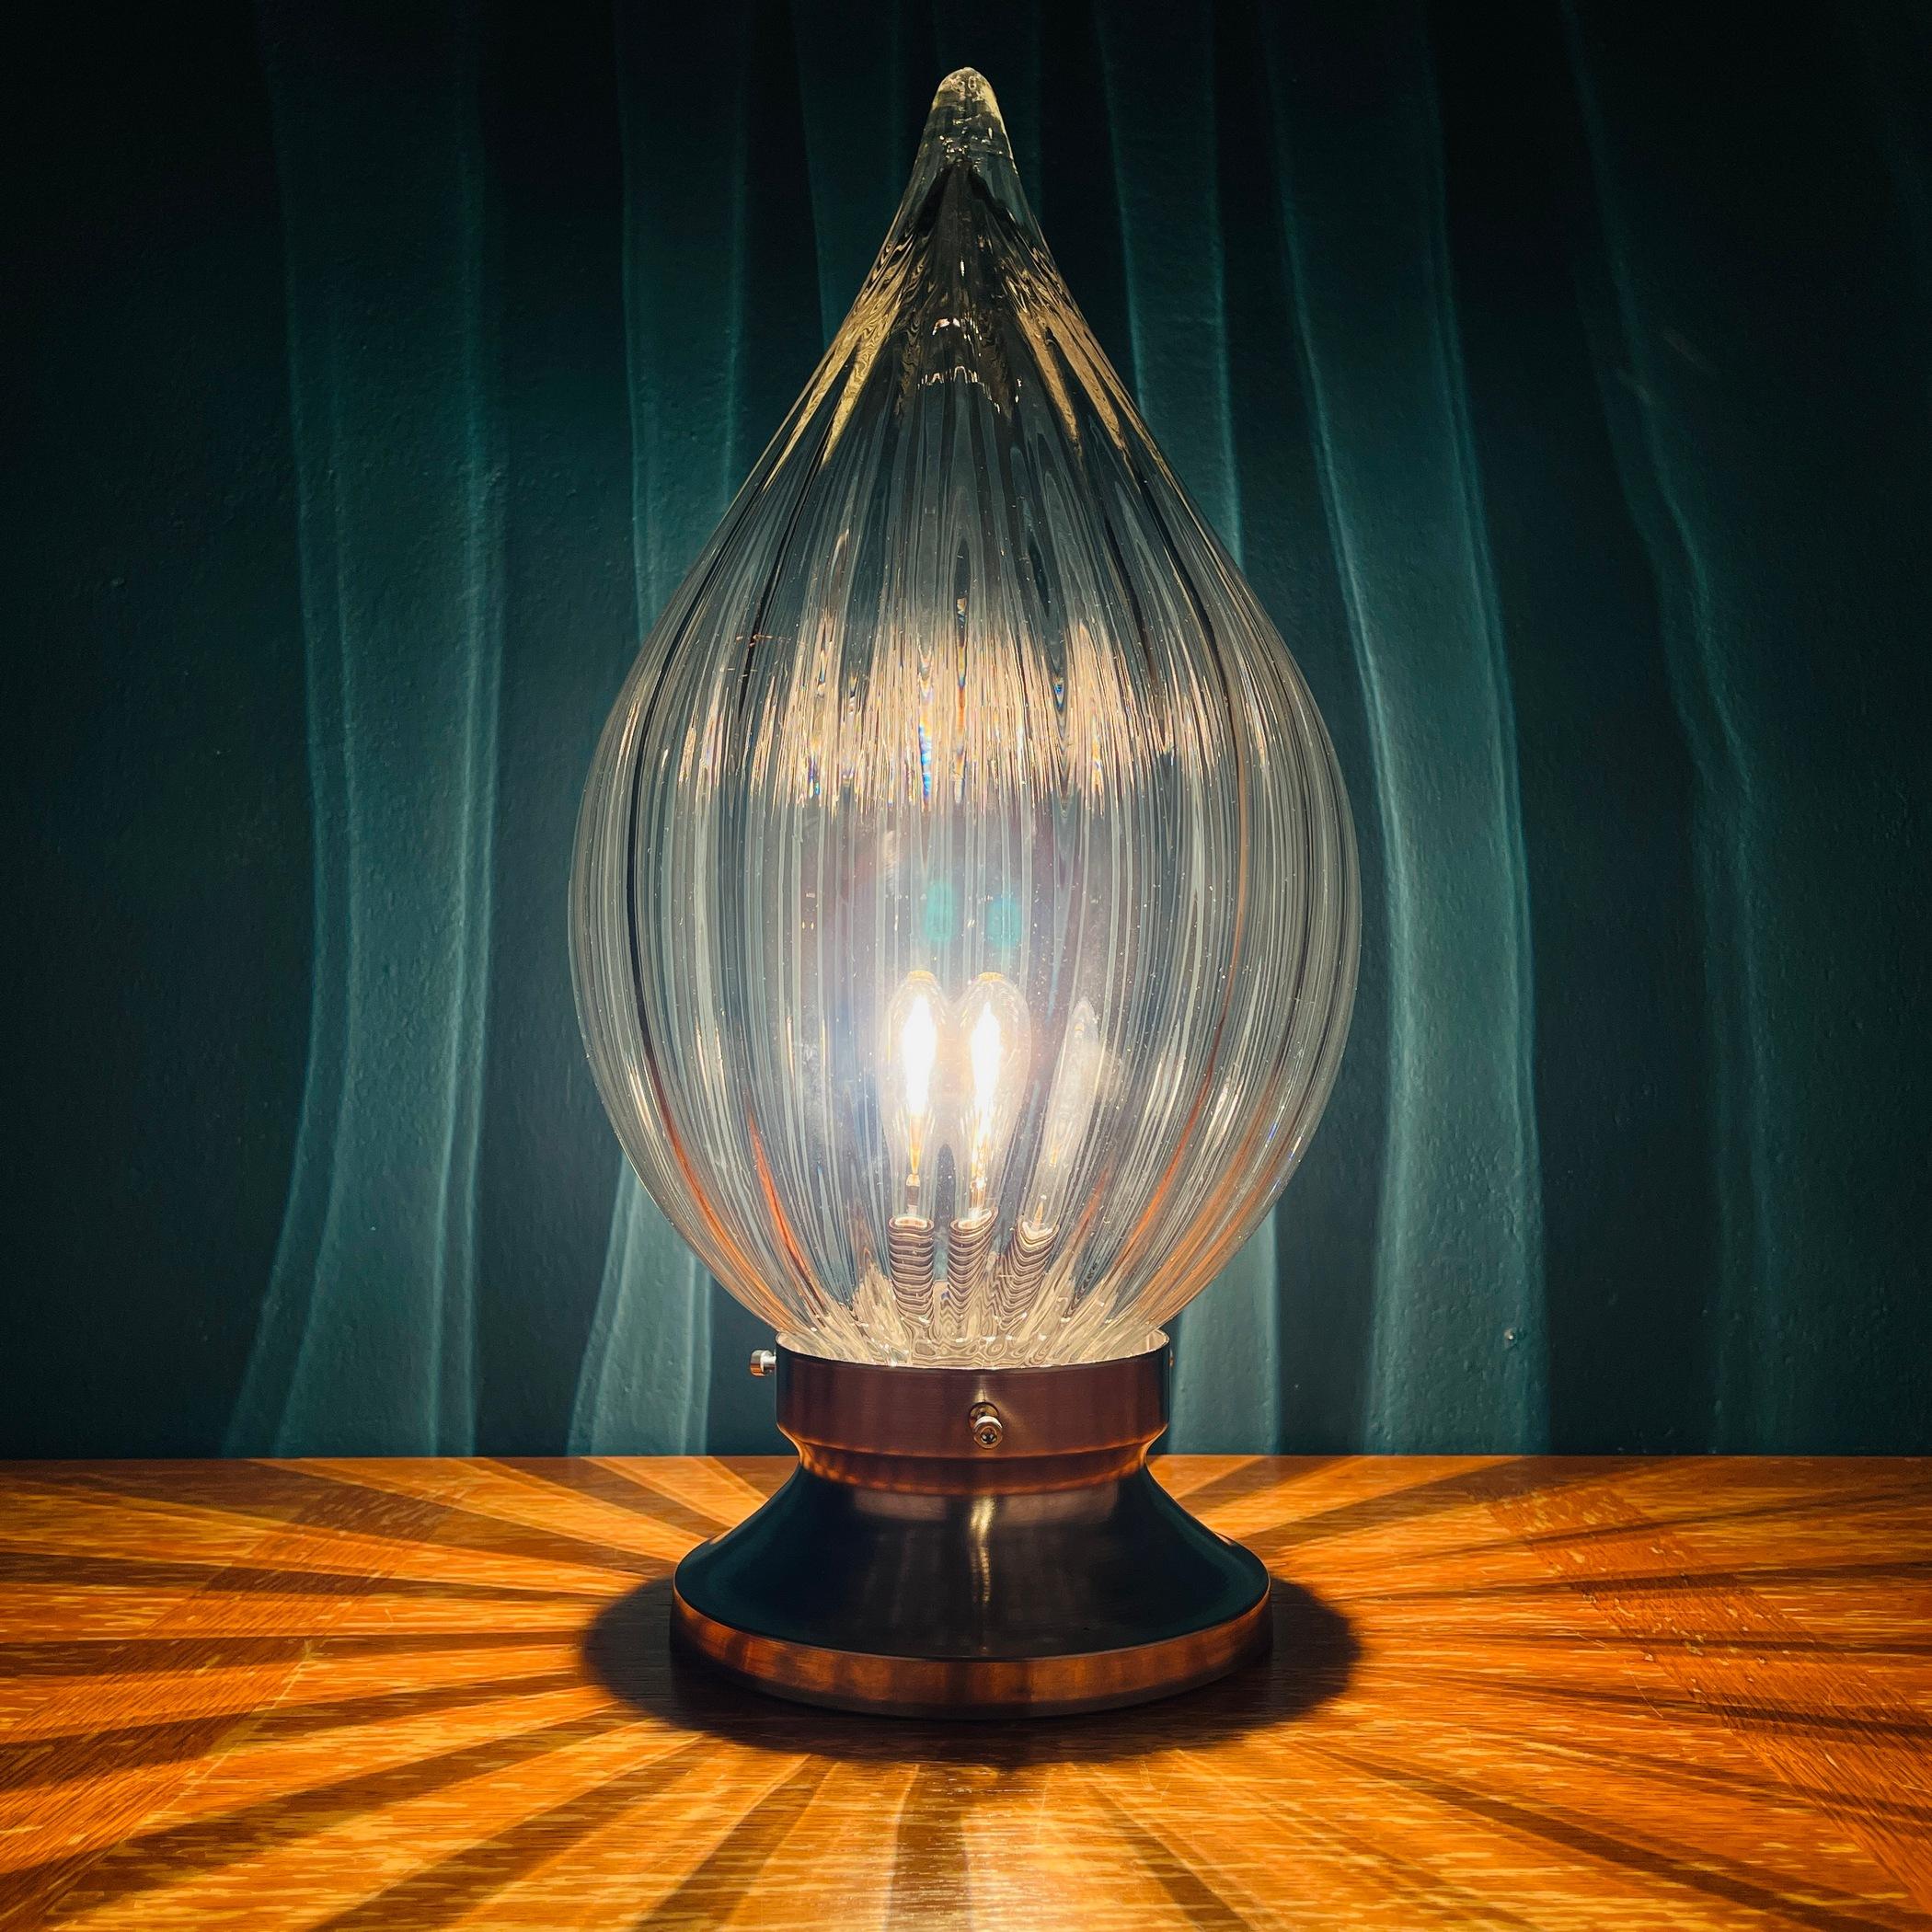 La très belle lampe de table en verre de Murano fabriquée en Italie dans les années 1970. L'abat-jour en forme de bougie en verre épais de Murano réfracte magnifiquement la lumière, créant un éclairage unique. Excellent état vintage. Une ampoule E27